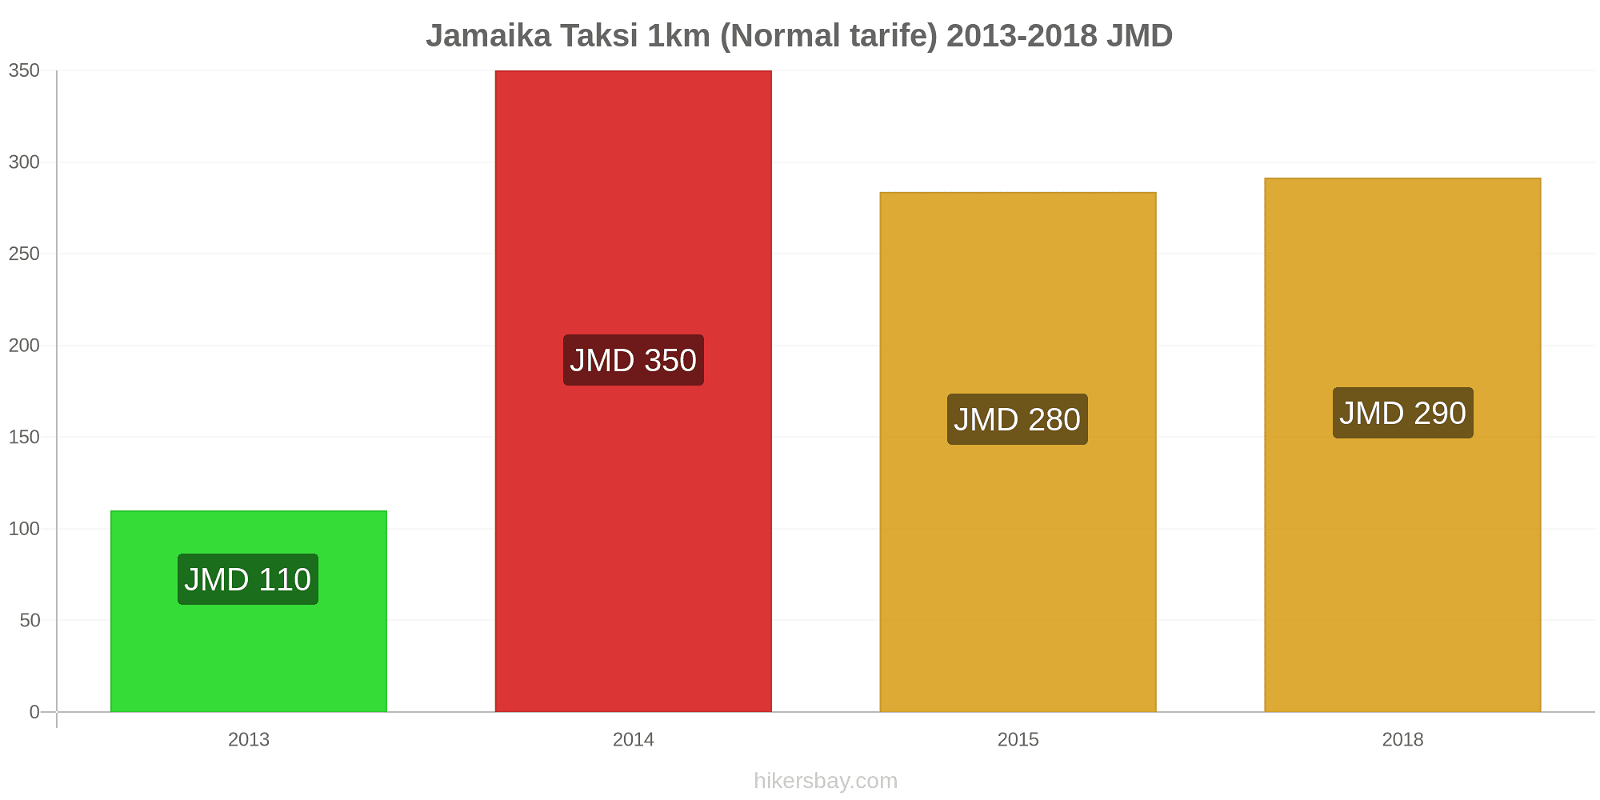 Jamaika fiyat değişiklikleri Taksi 1km (Normal tarife) hikersbay.com